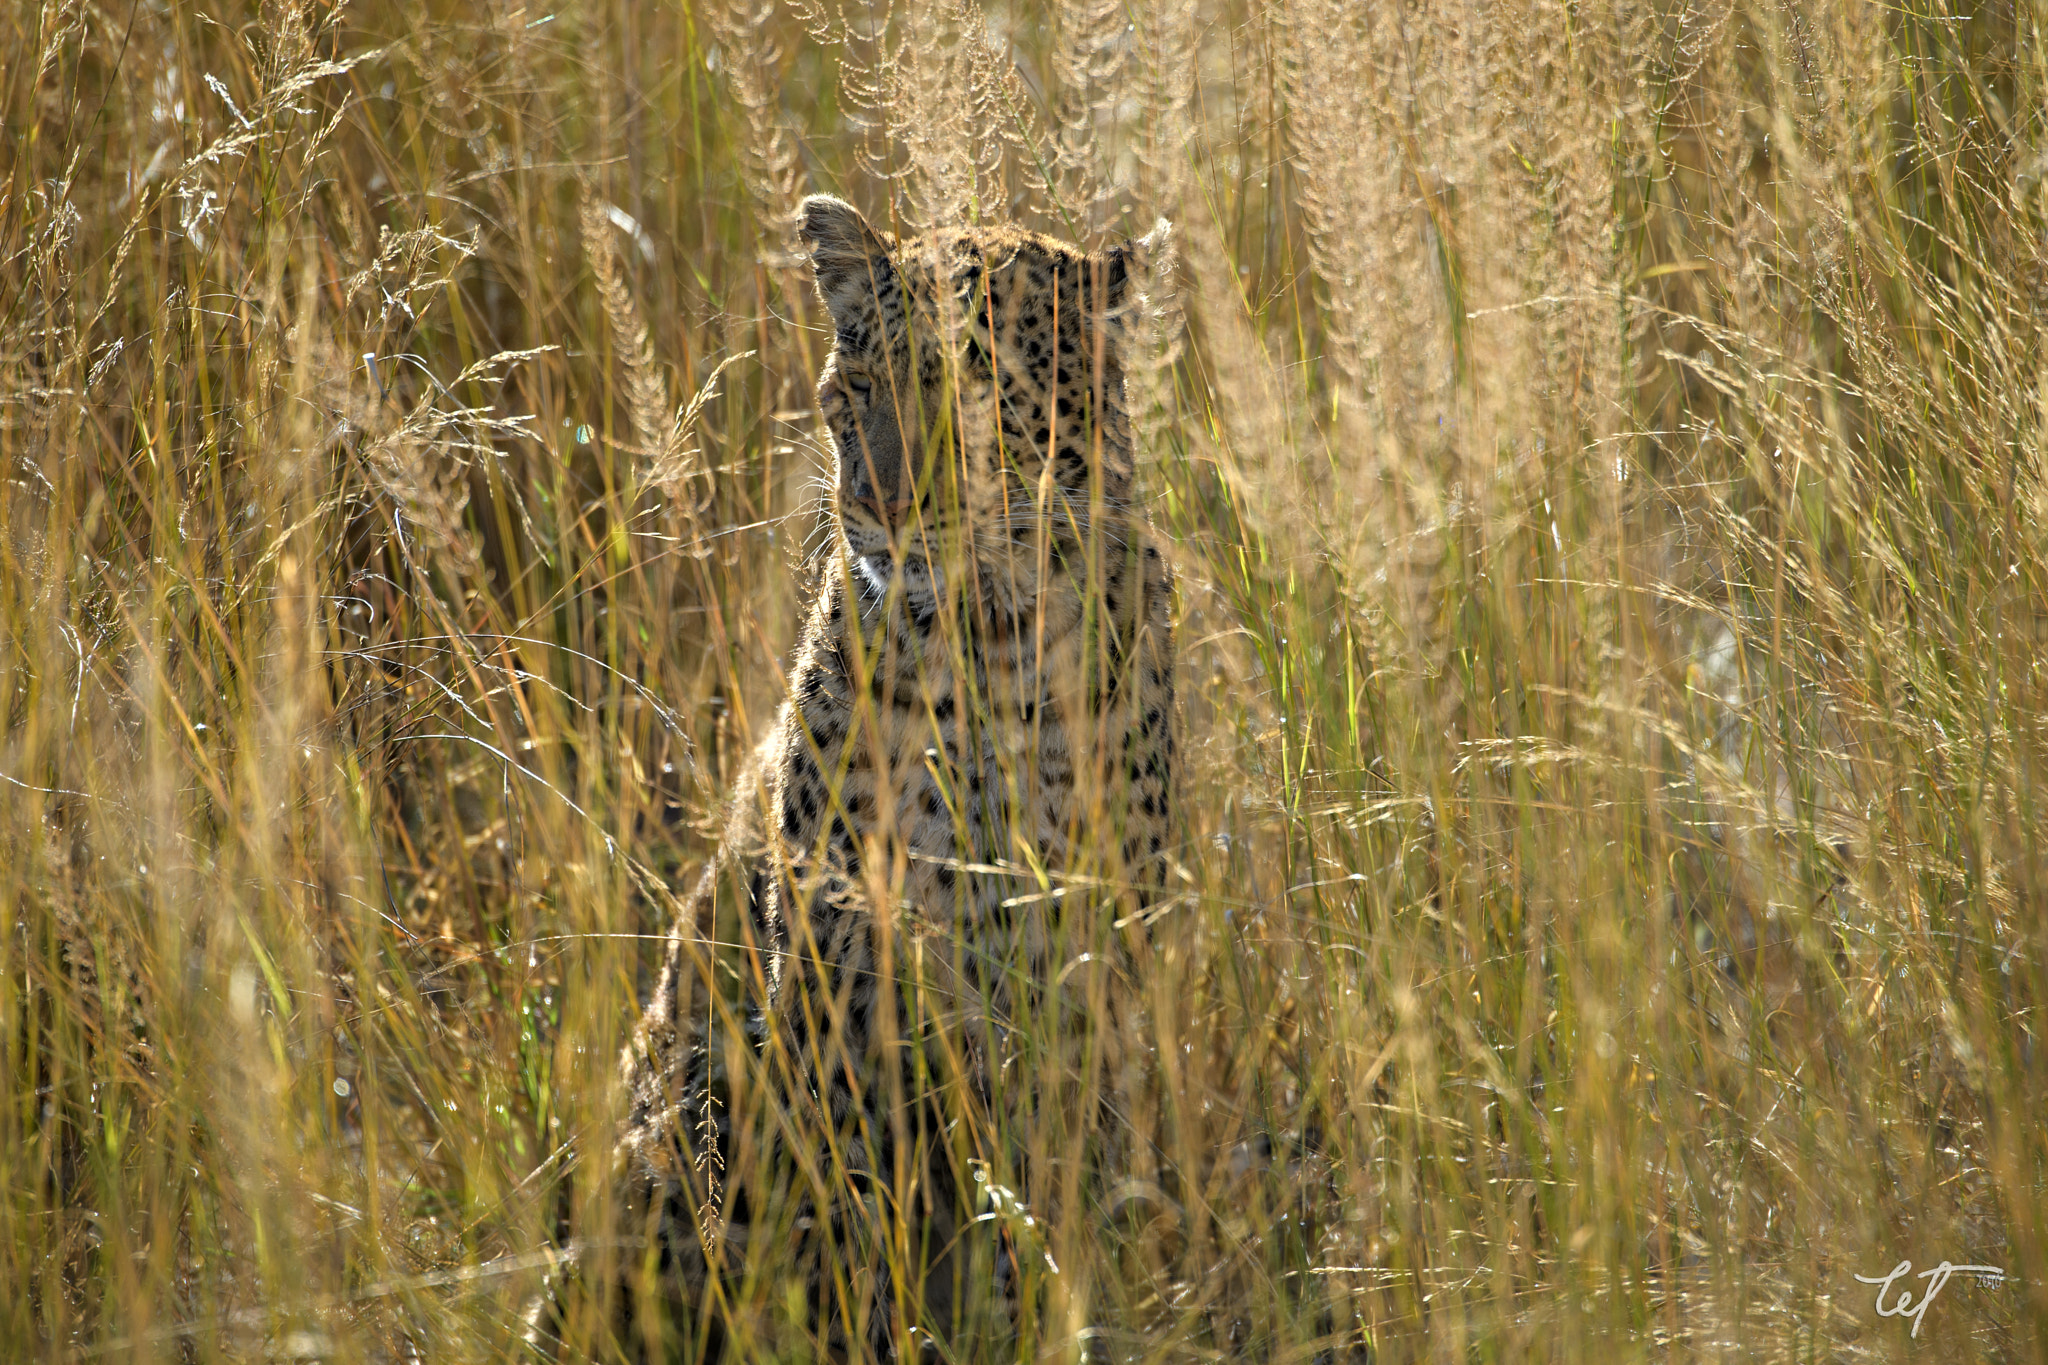 Nikon D5 sample photo. Cat beneath the reeds photography